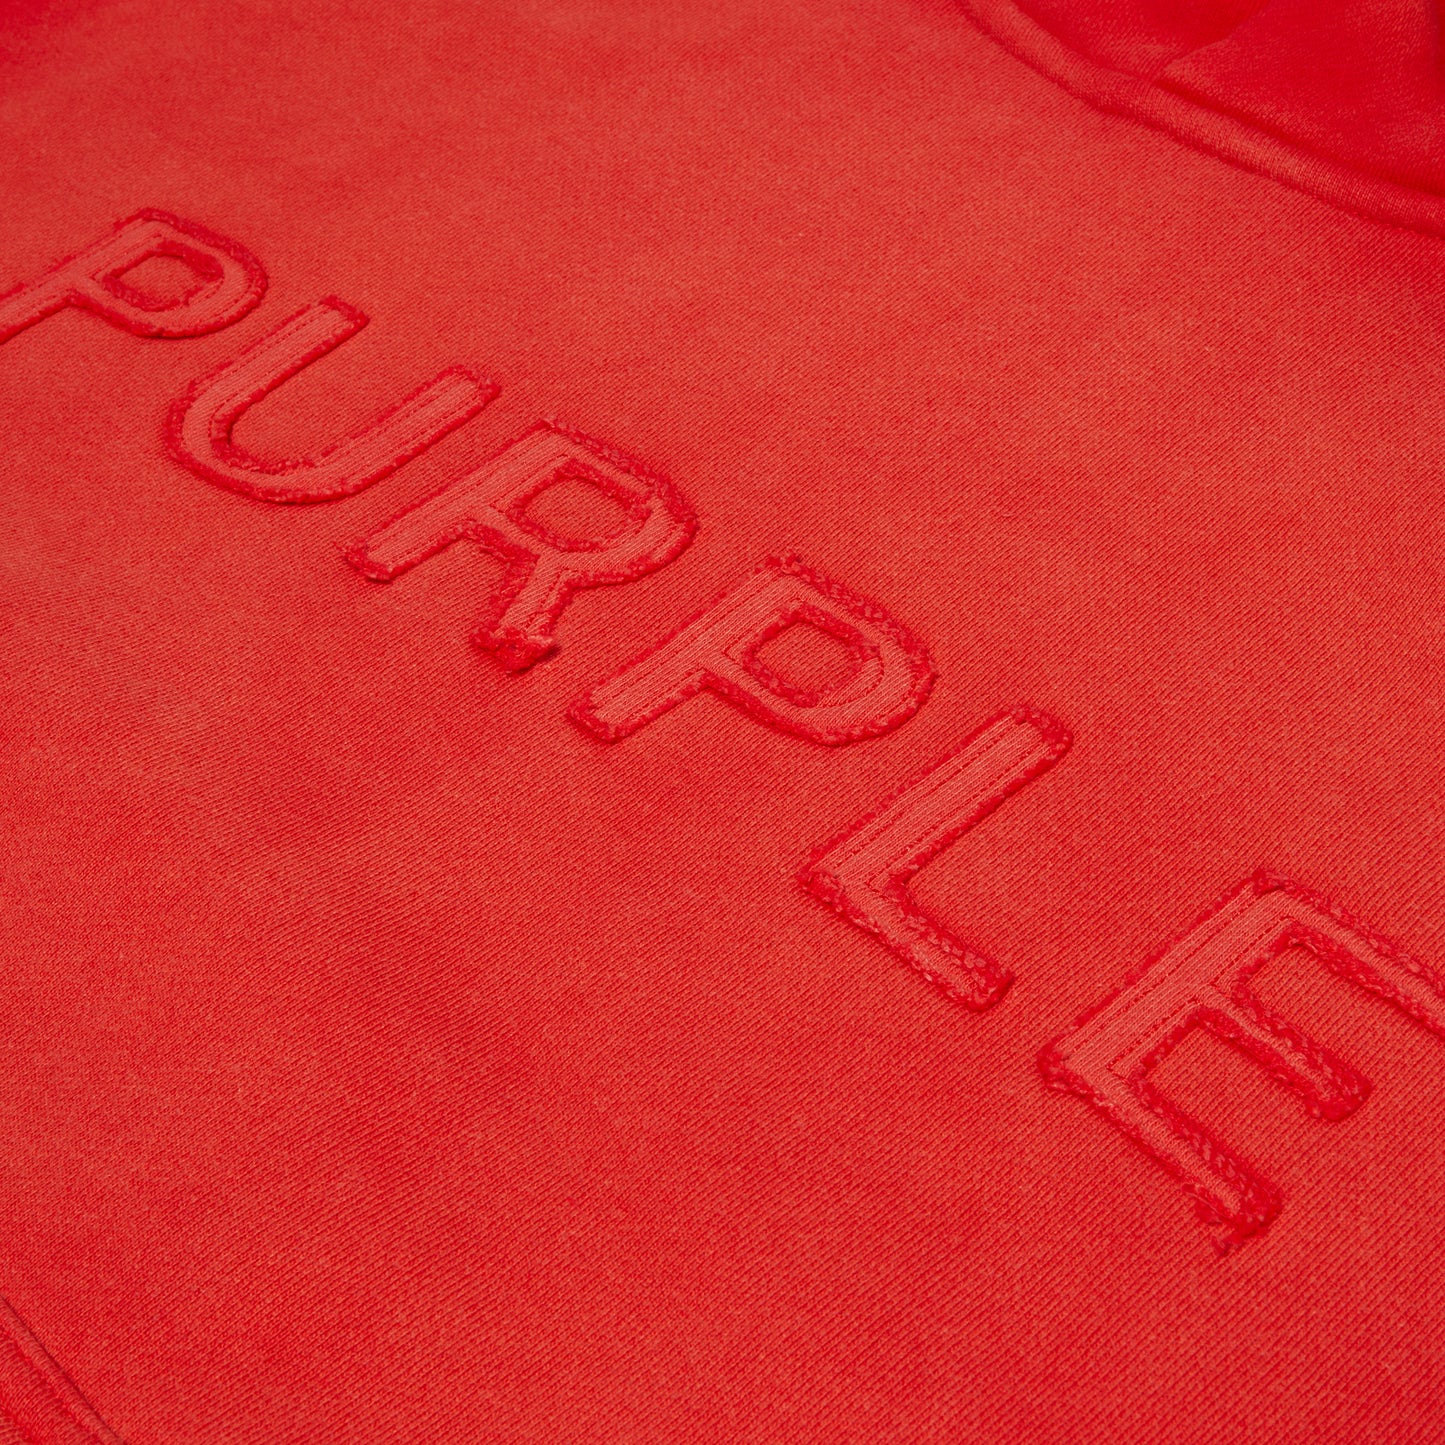 PURPLE Brand HWT Fleece PO Hoody (Red)